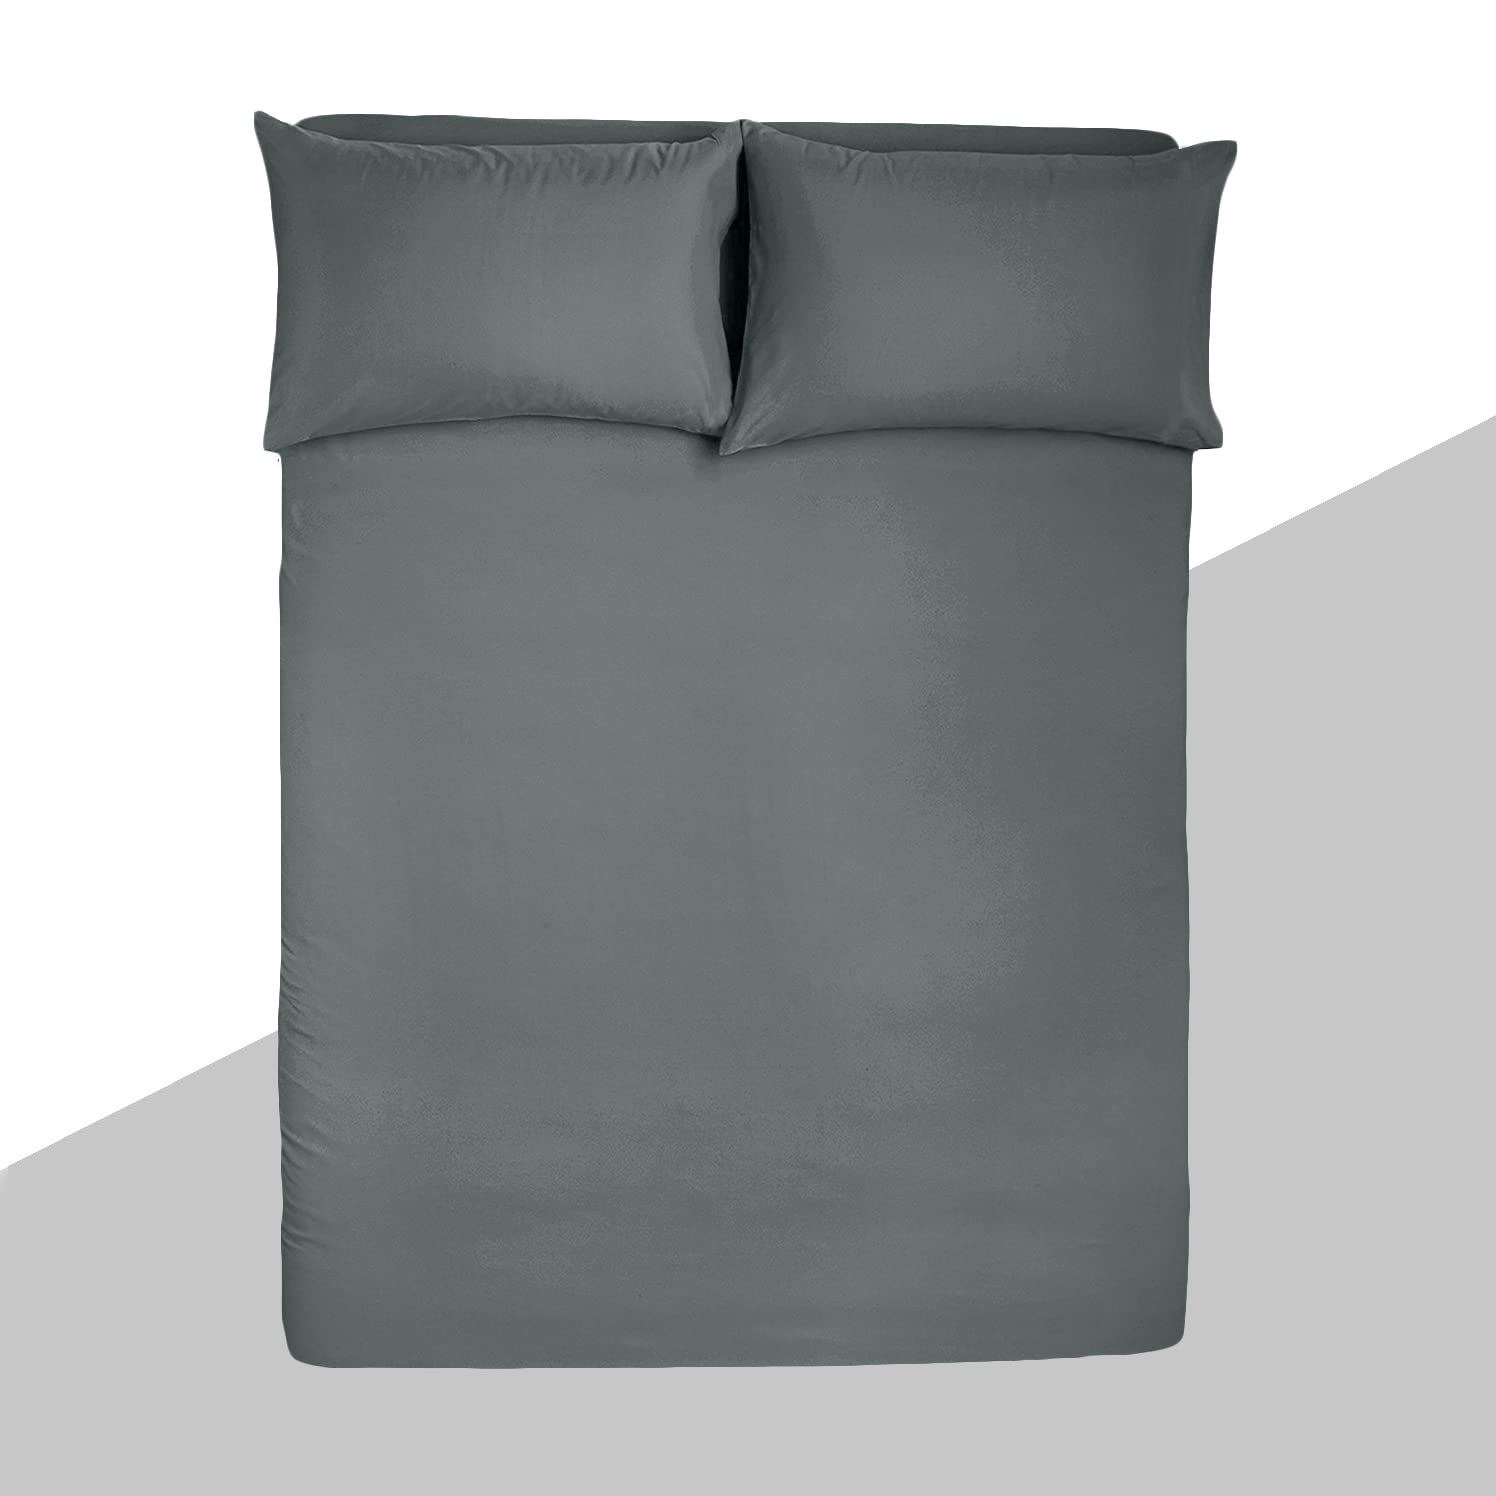 Bedsheet Single / Double Bed, Grey